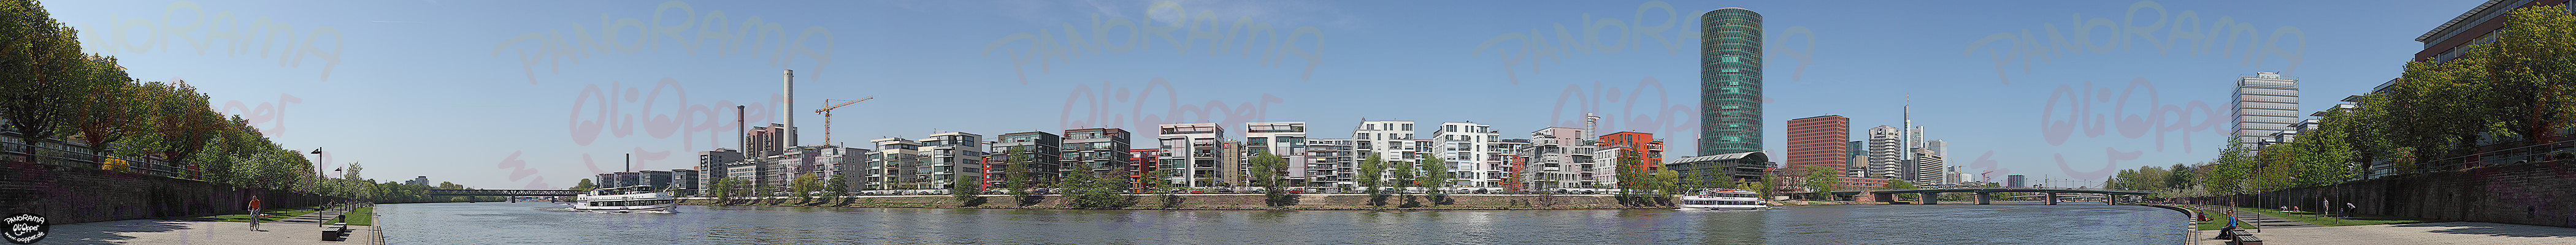 Frankfurt am Main - Der Westhafen im Fr�hling - p410 - (c) by Oliver Opper